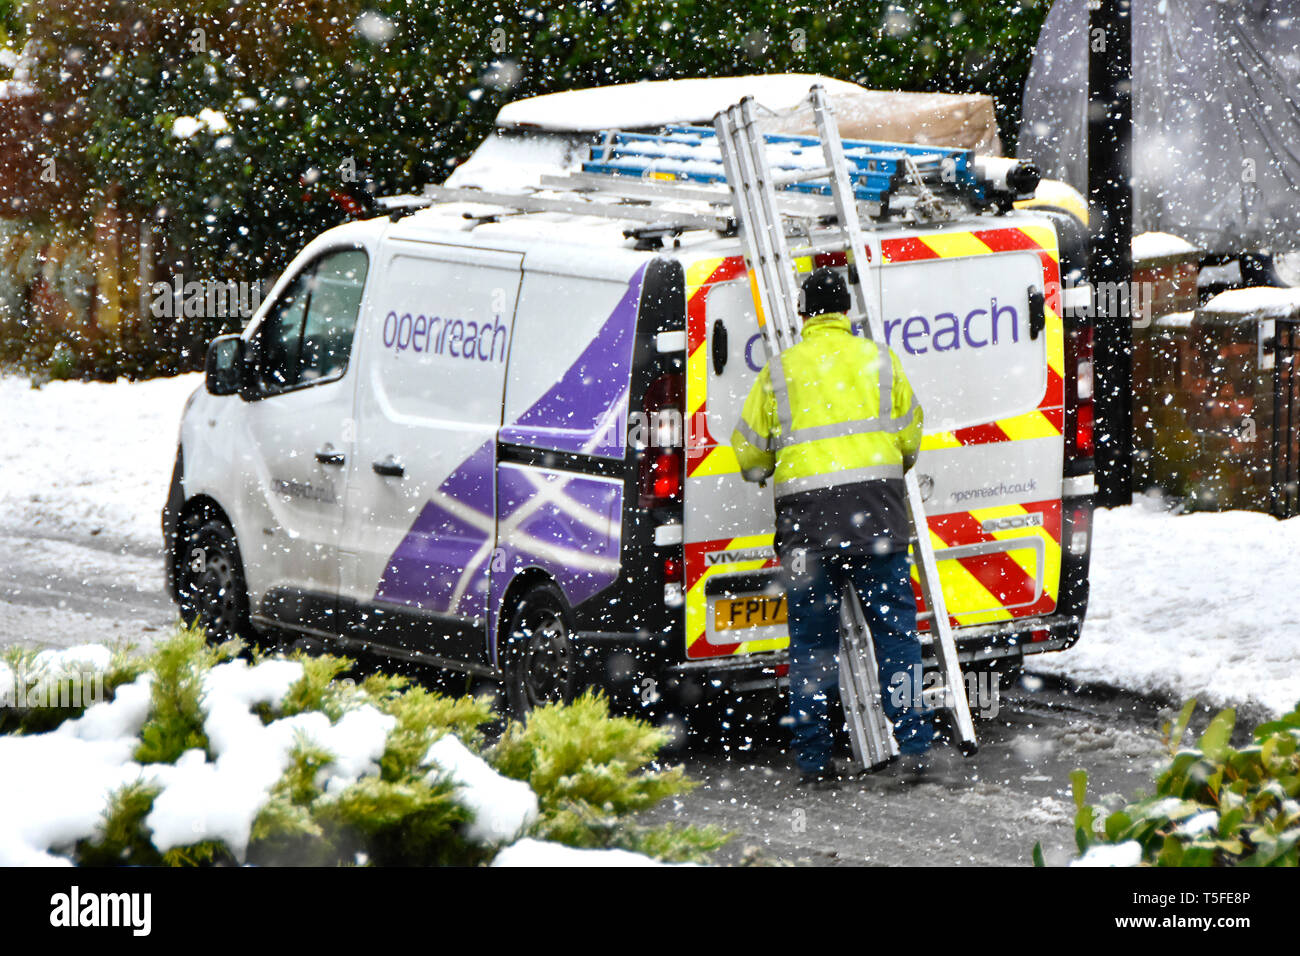 Im Winter verschneite Straße Szene Schneeflocken um BT Openreach van & Ingenieur high vis Jacke arbeiten mit Leiter in fallenden Schnee Sturm England Großbritannien Stockfoto